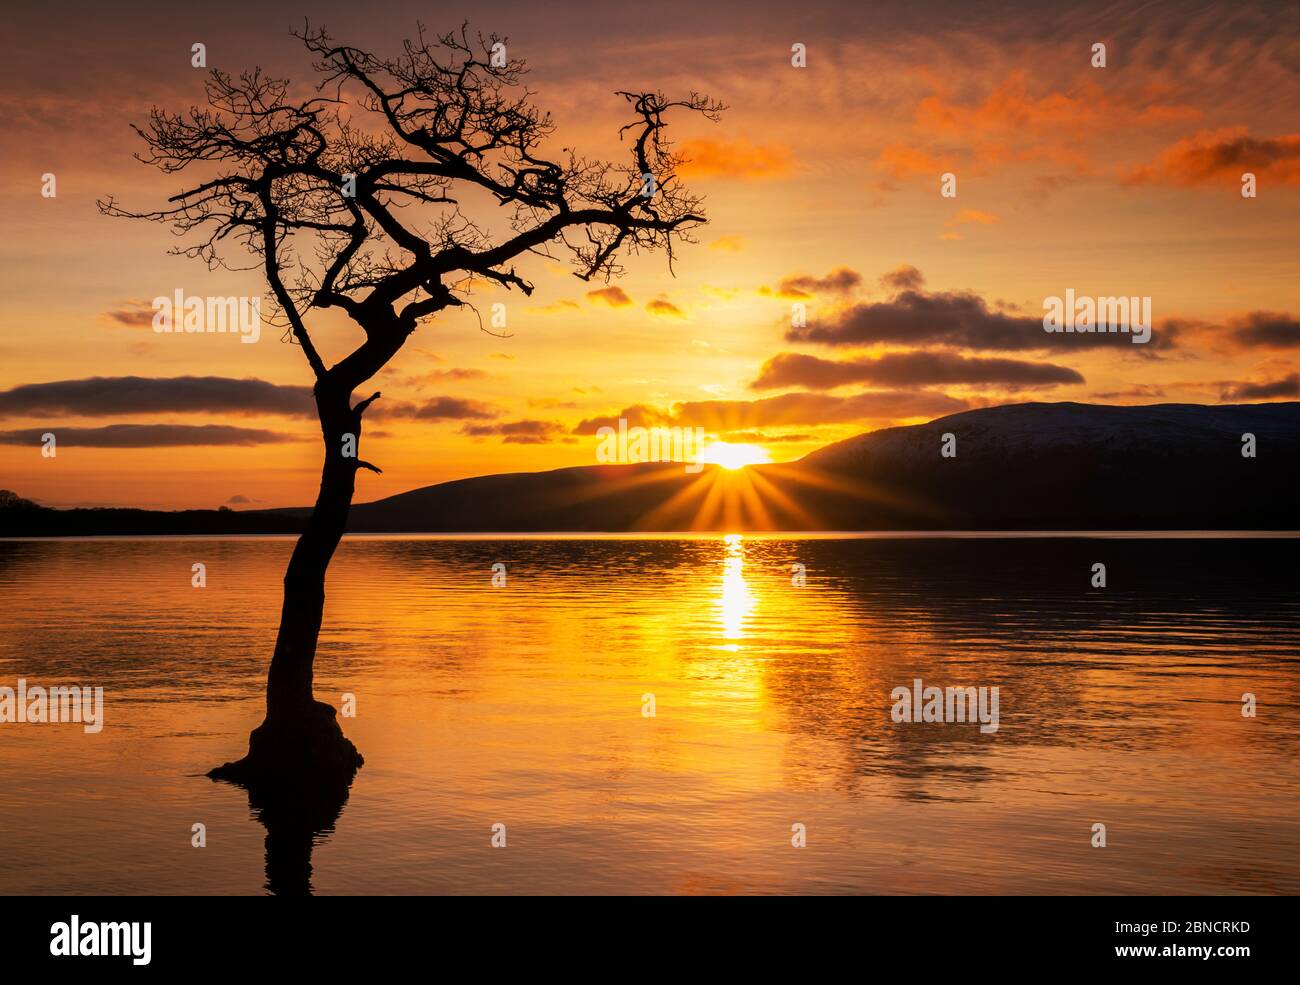 Coucher de soleil Un seul arbre à Milarrochy Bay Loch Lomond et le parc national des Trossachs près de Balmaha Stirling Ecosse Royaume-Uni GB Europe Banque D'Images